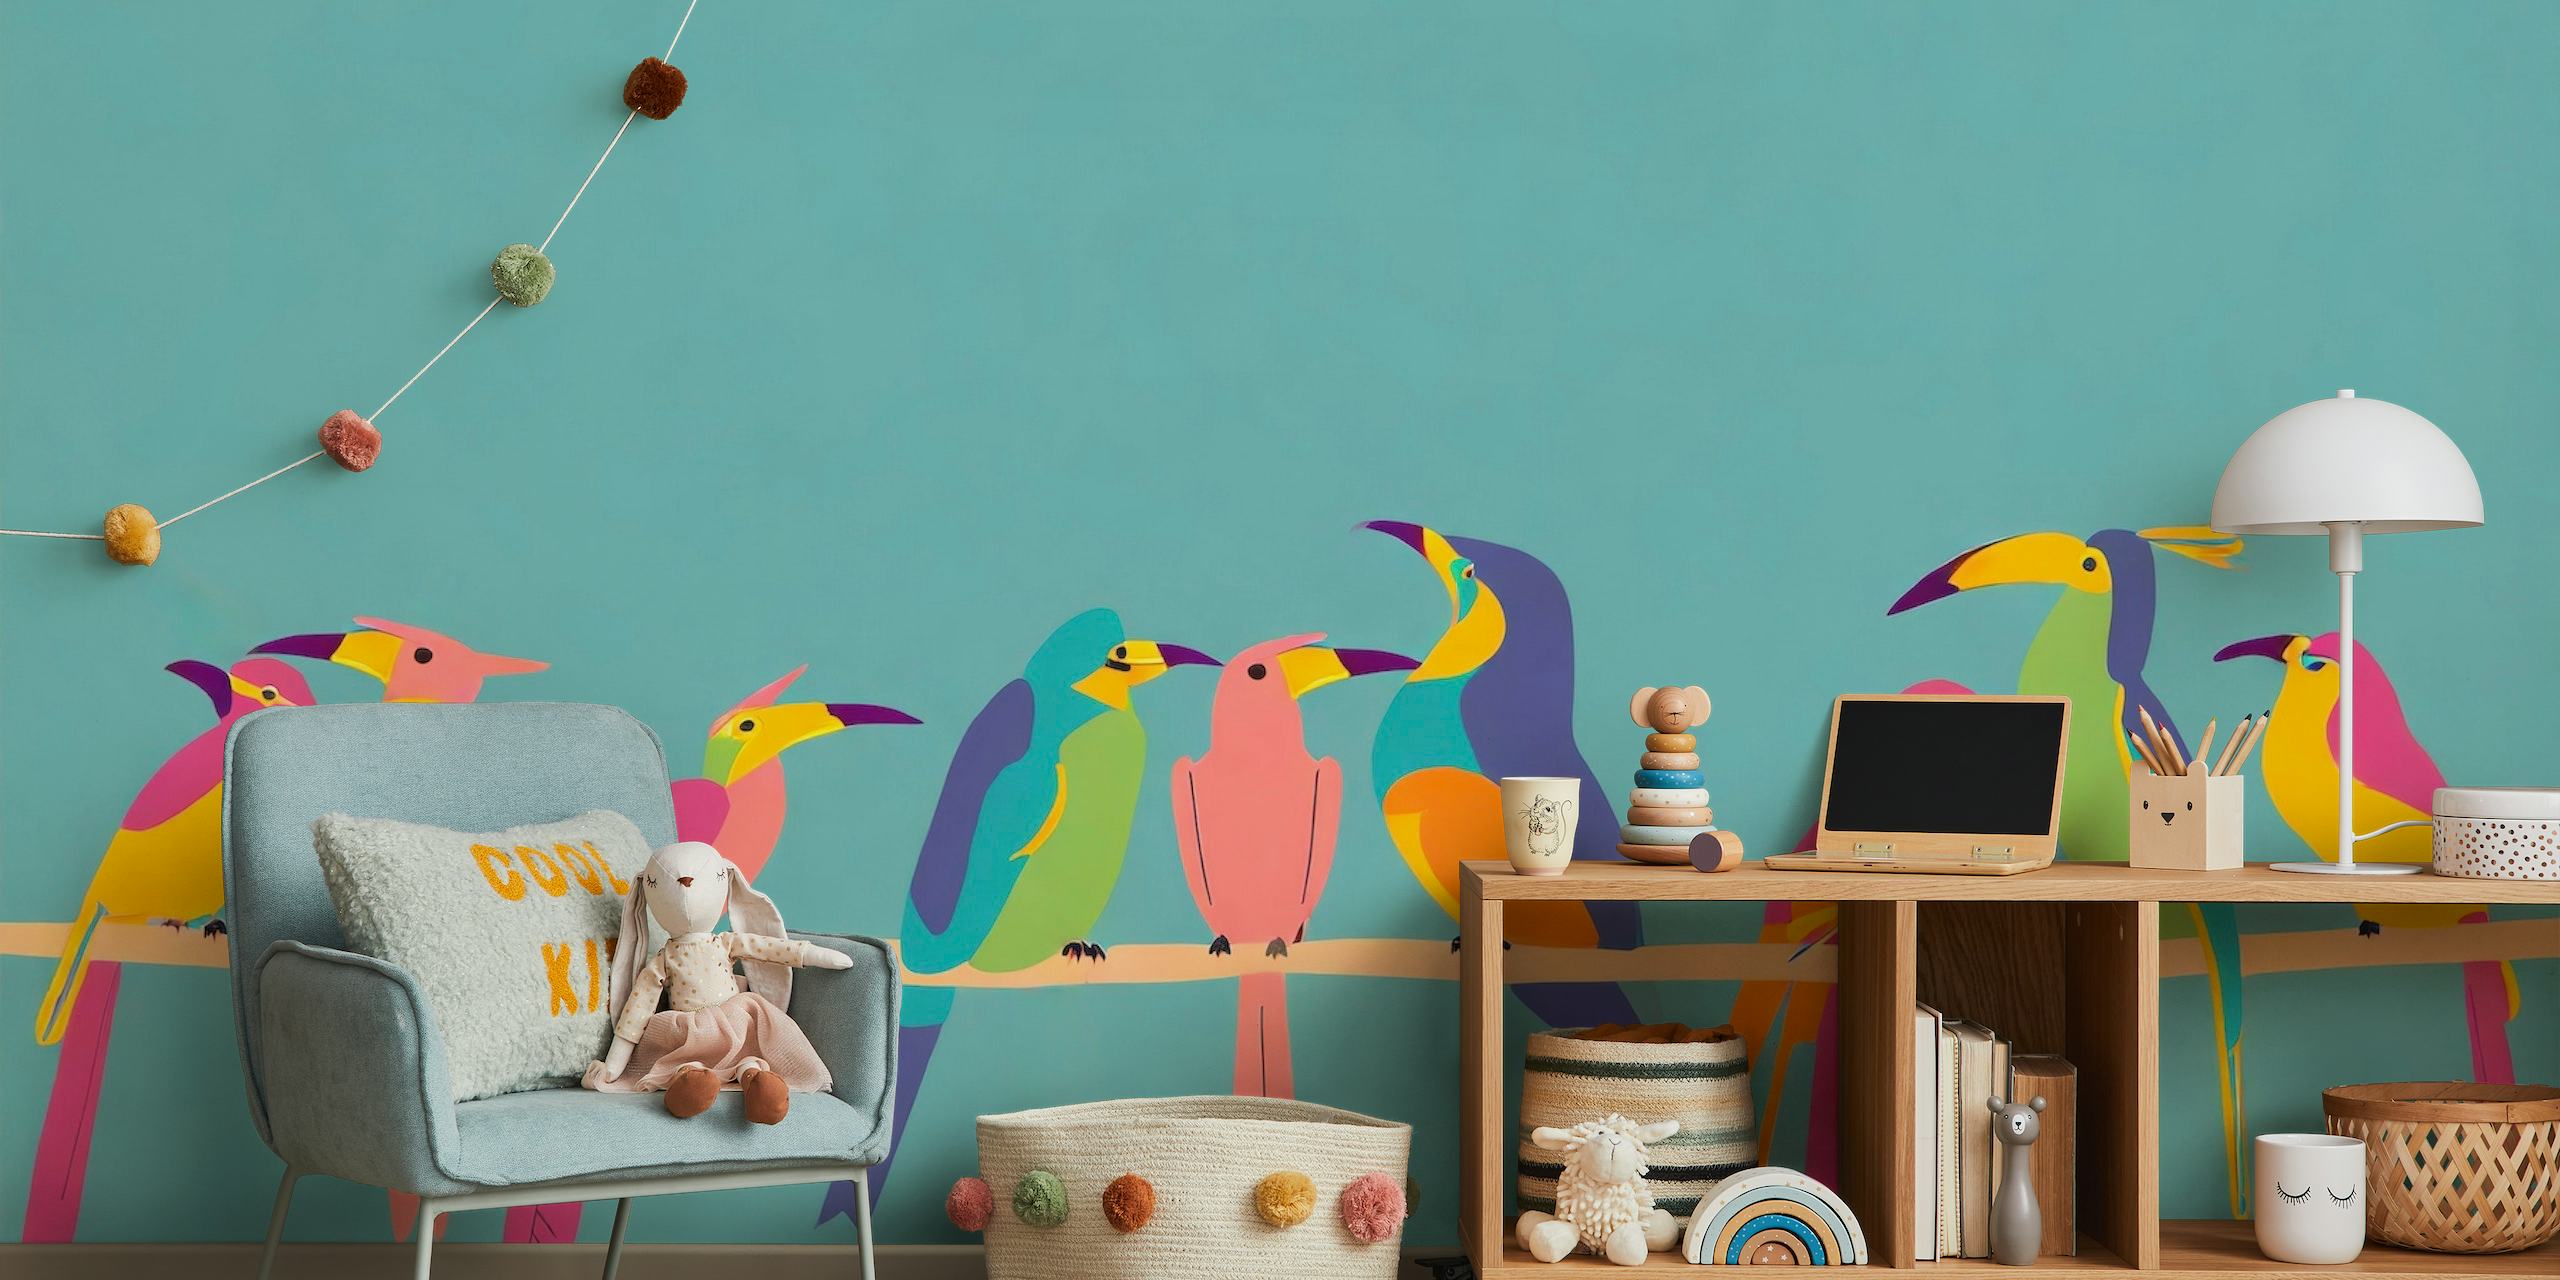 Illustration af stiliserede farverige fugle på en gren mod et blågrøn baggrundsvægmaleri